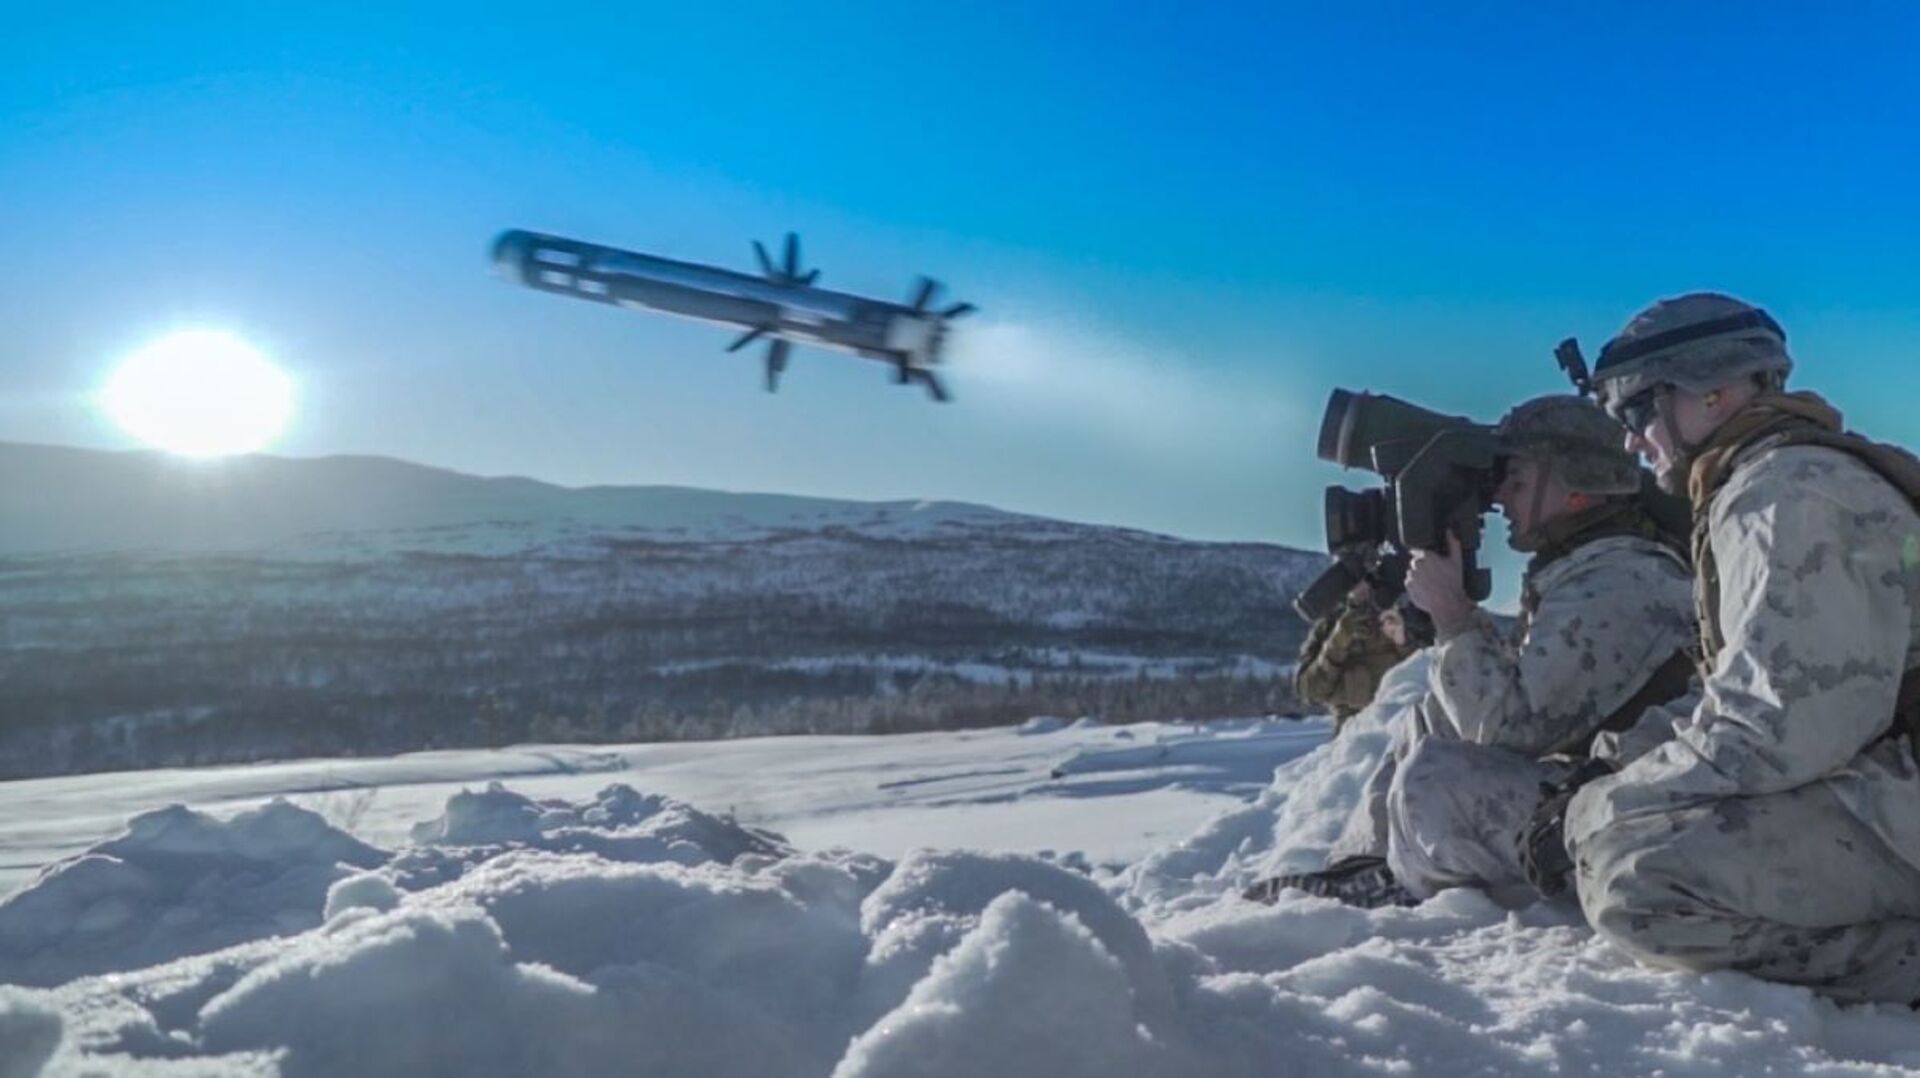 Американский военнослужащий производит выстрел из противотанкового ракетного комплекса (ПТРК) Javelin во время учений Cold Response 2020 в Норвегии - Sputnik Latvija, 1920, 19.03.2022